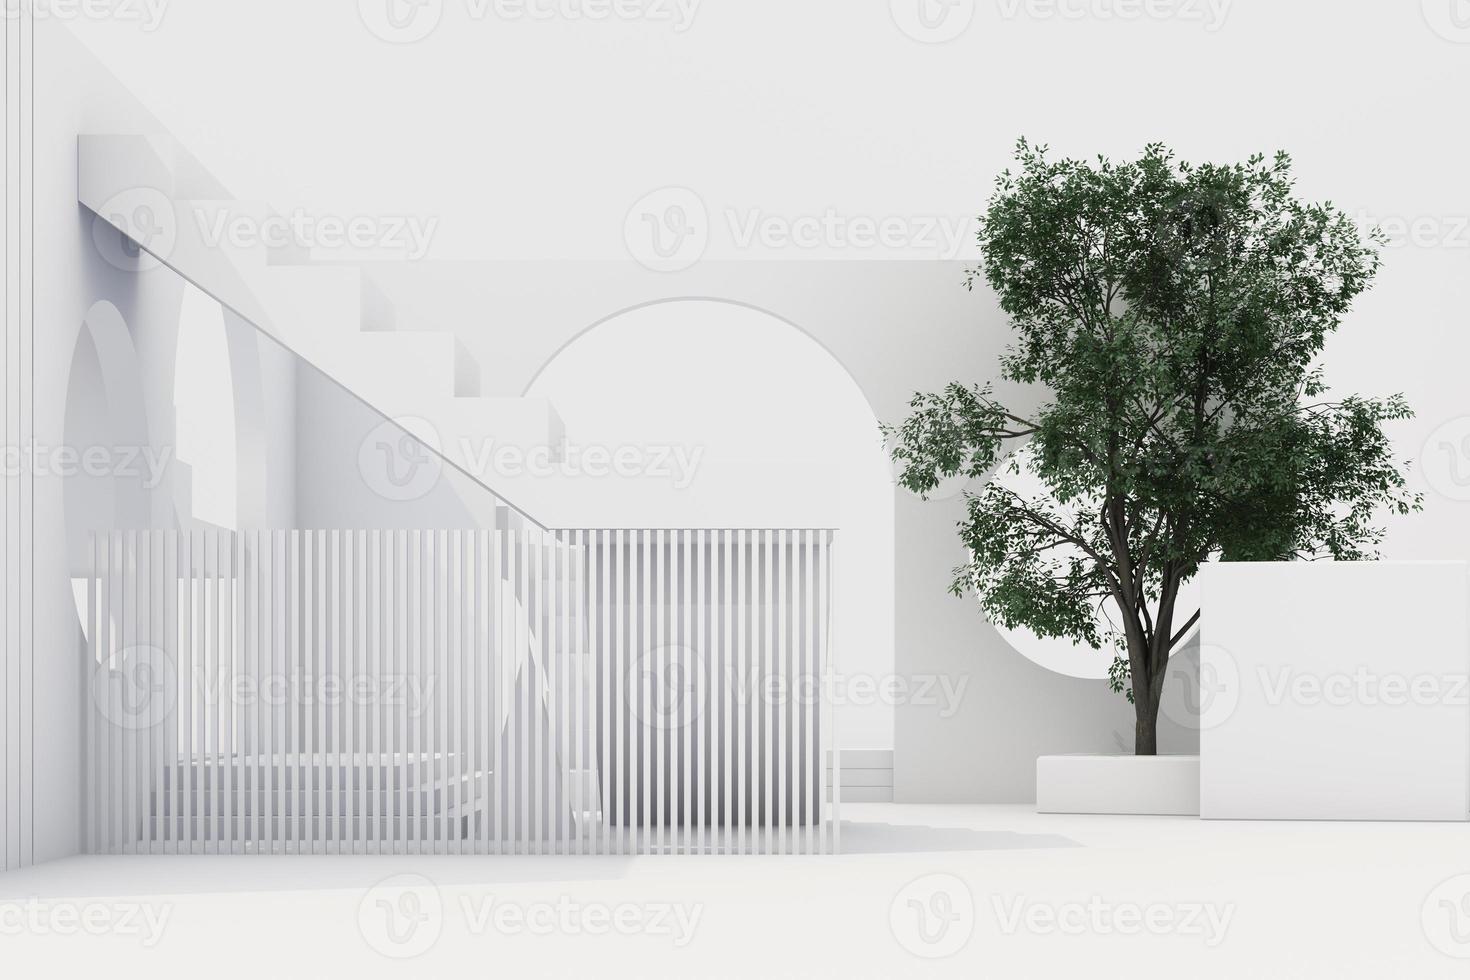 Zusammensetzung der geometrischen Form mit Treppe und Bogen auf weißem Hintergrund. 3D-Rendering foto